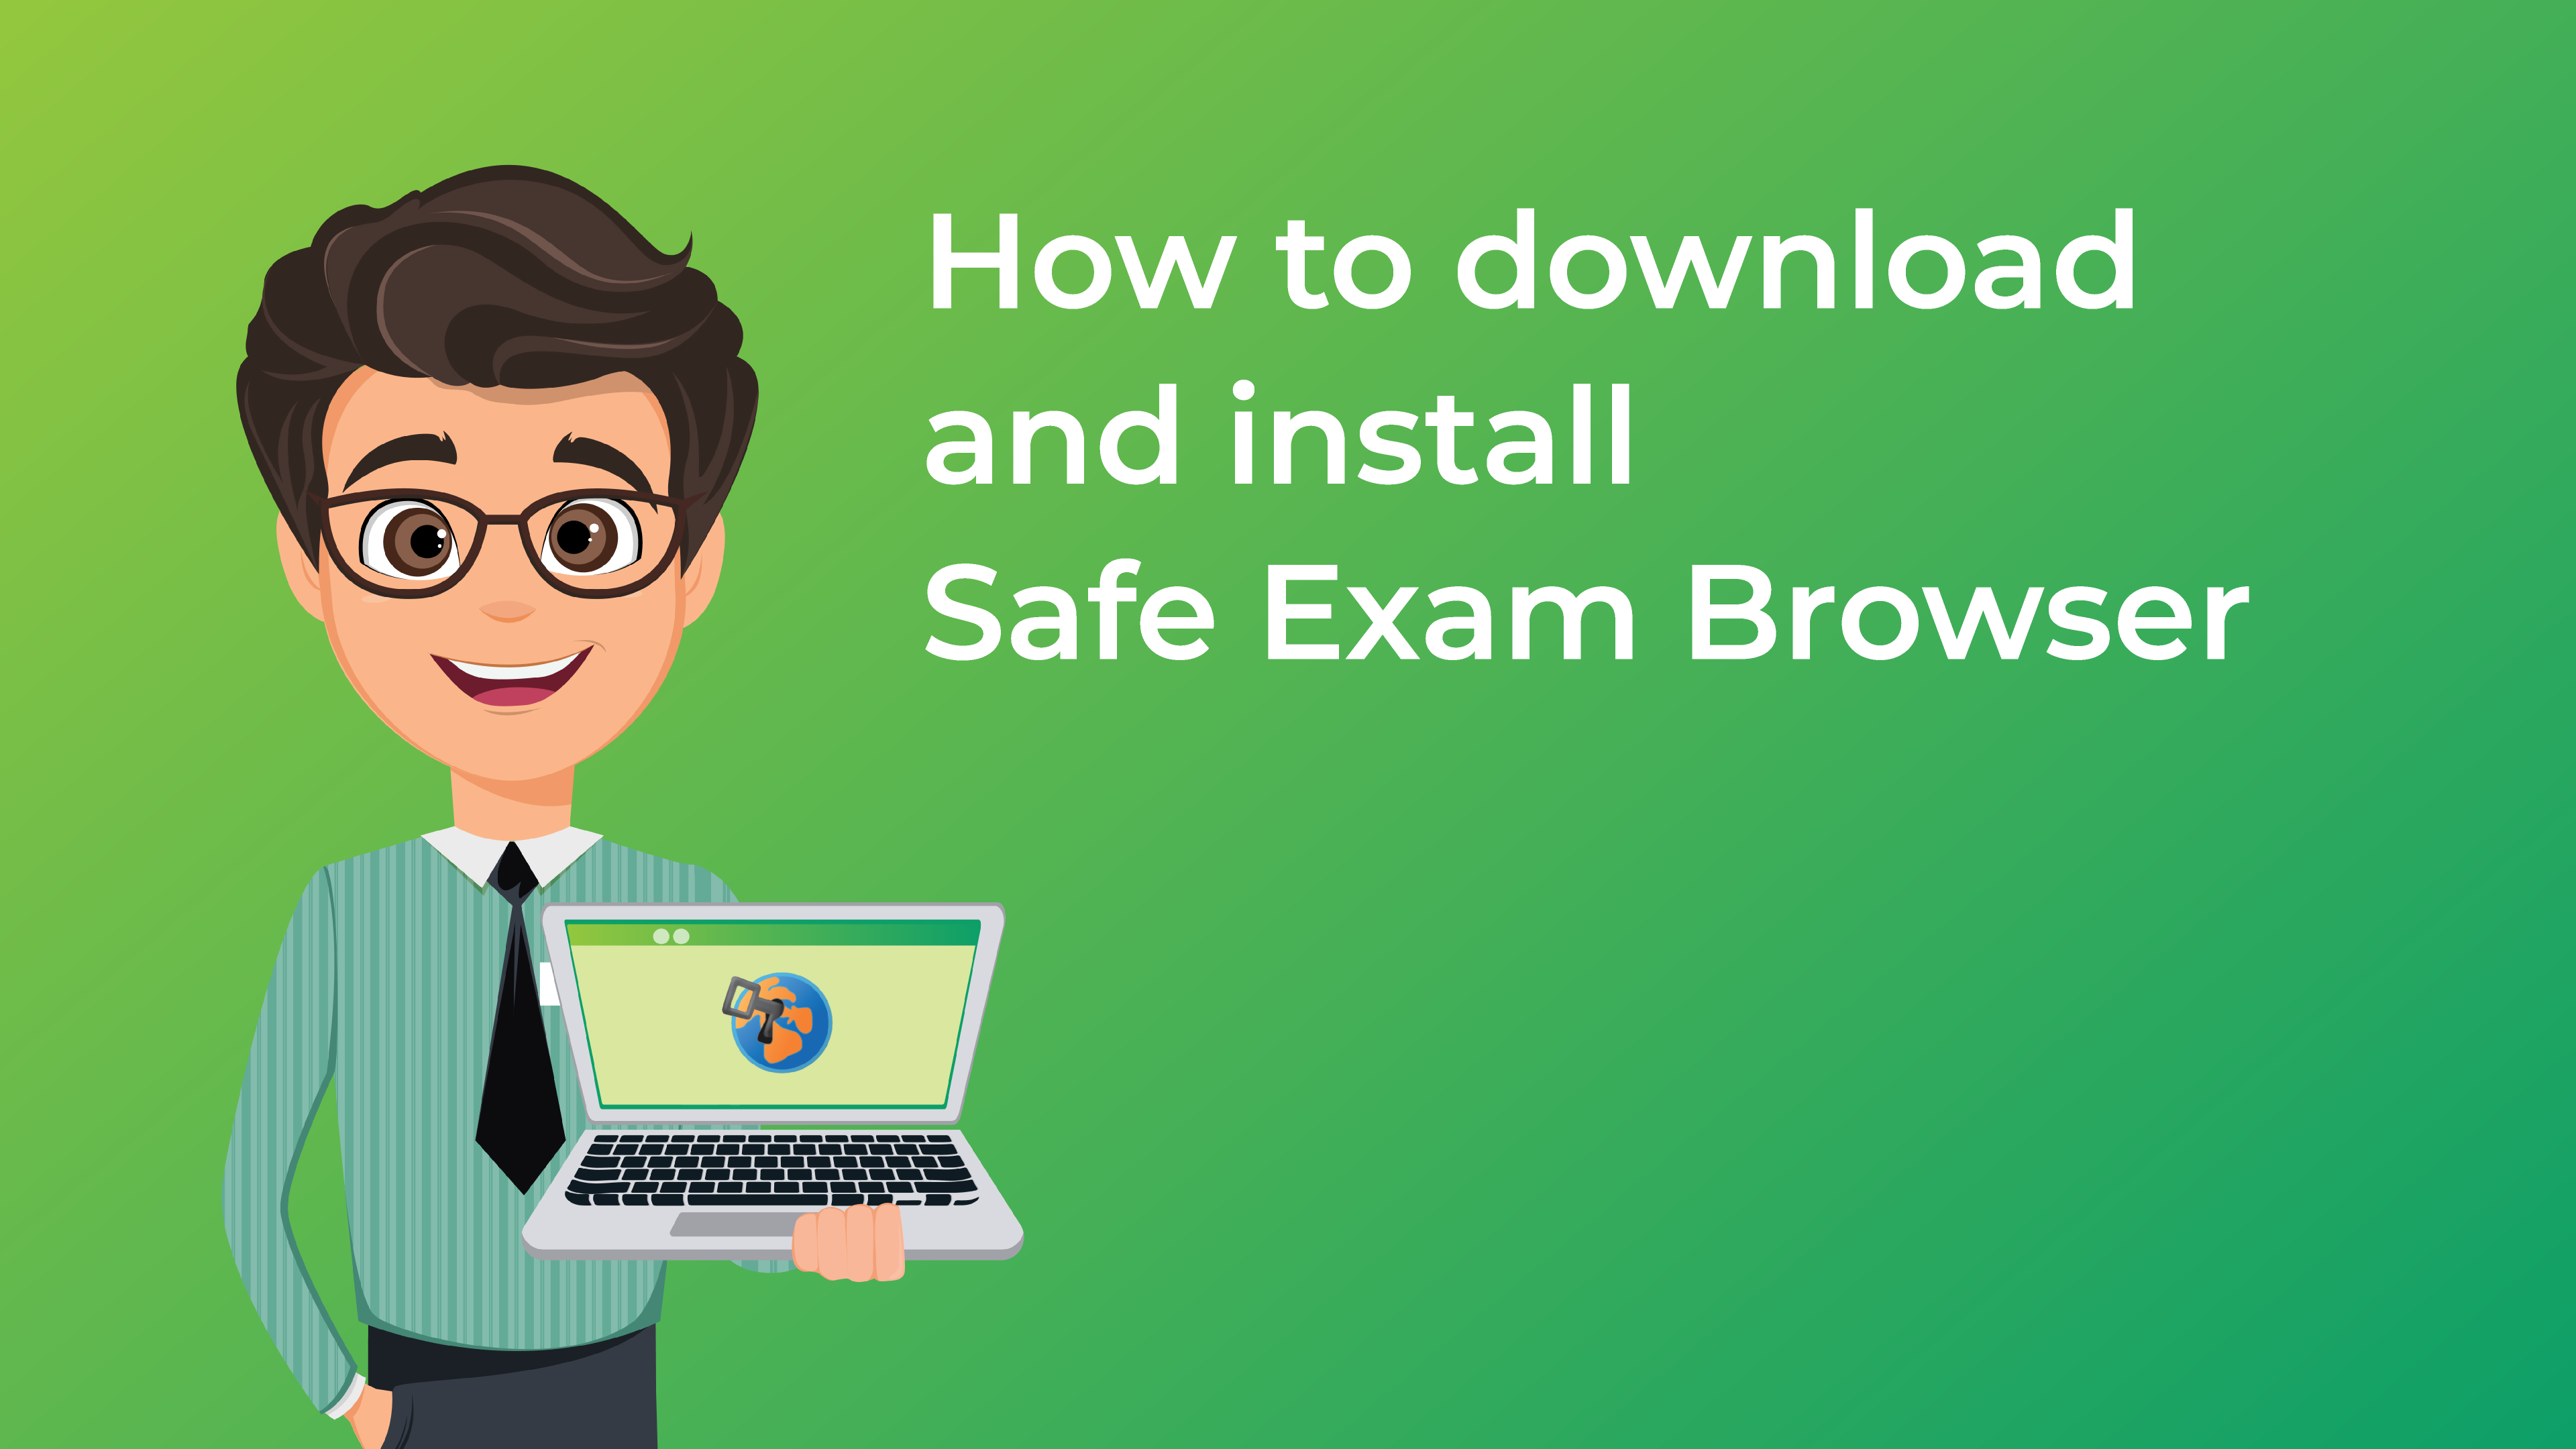 Safe exam browser